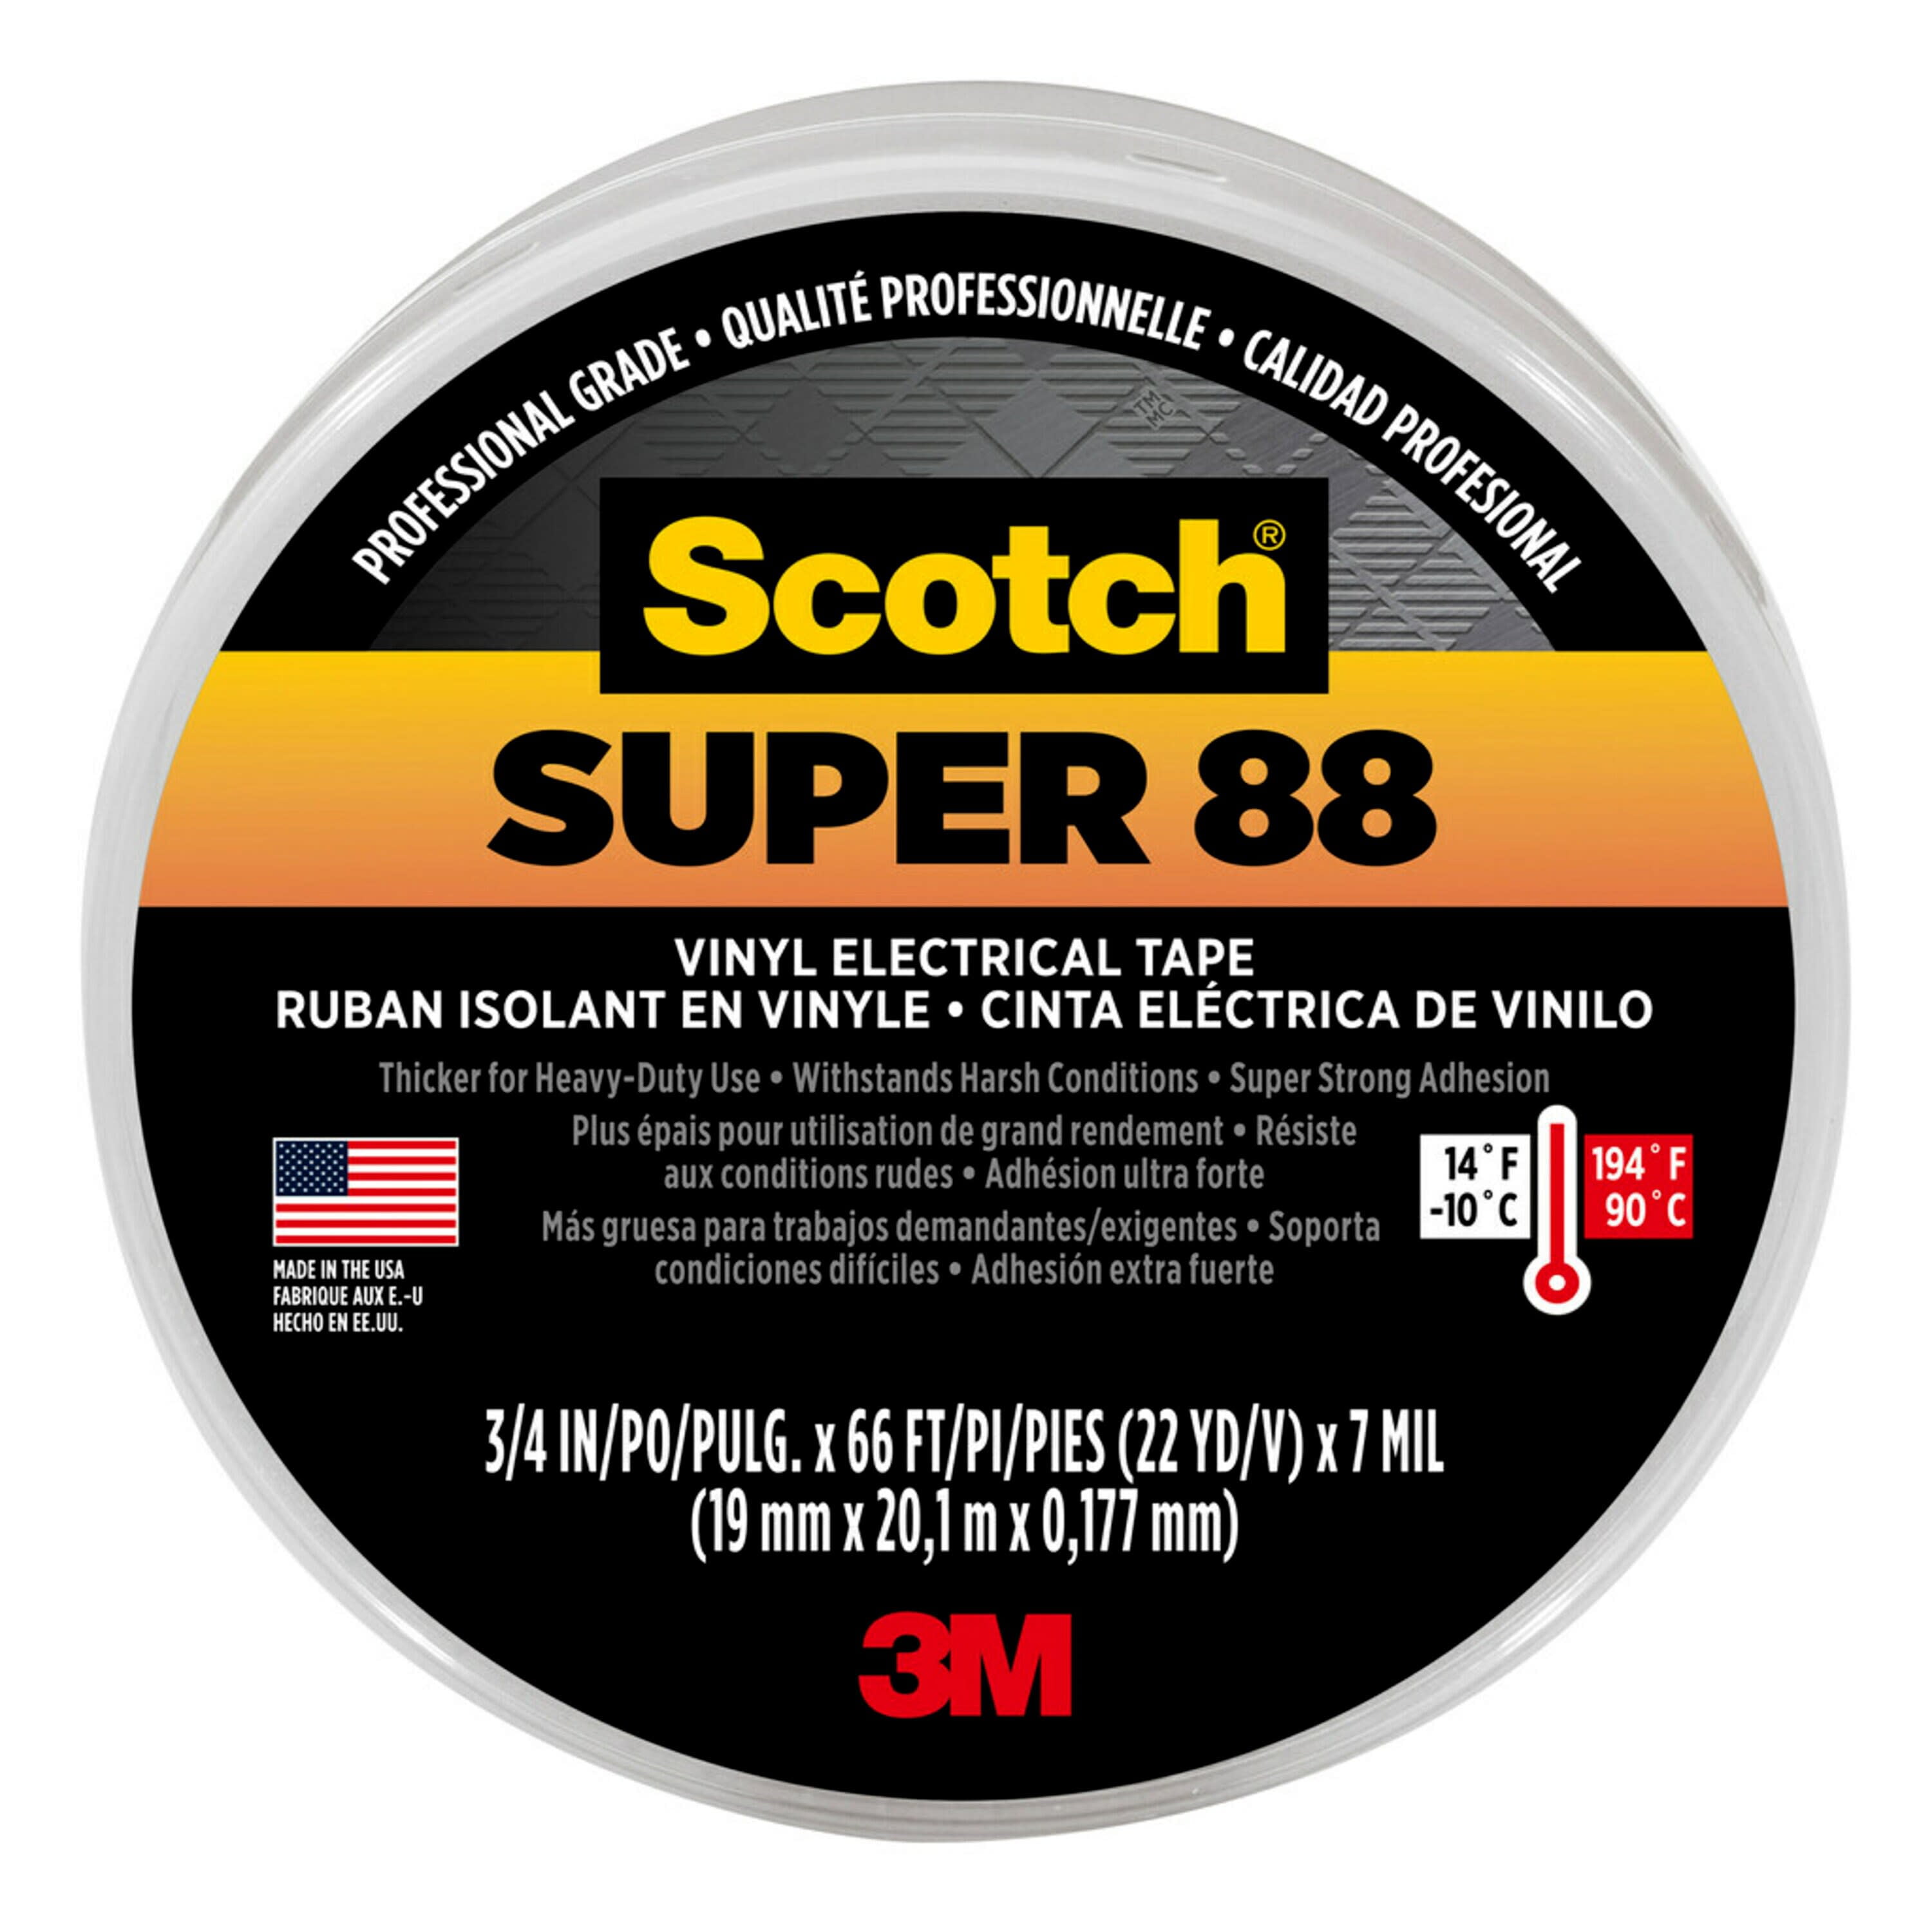 #06130 3M SCOTCH SUPER 33 VINYL ELECTRICAL TAPE 1 ROLL 3/4" X 20 FT 